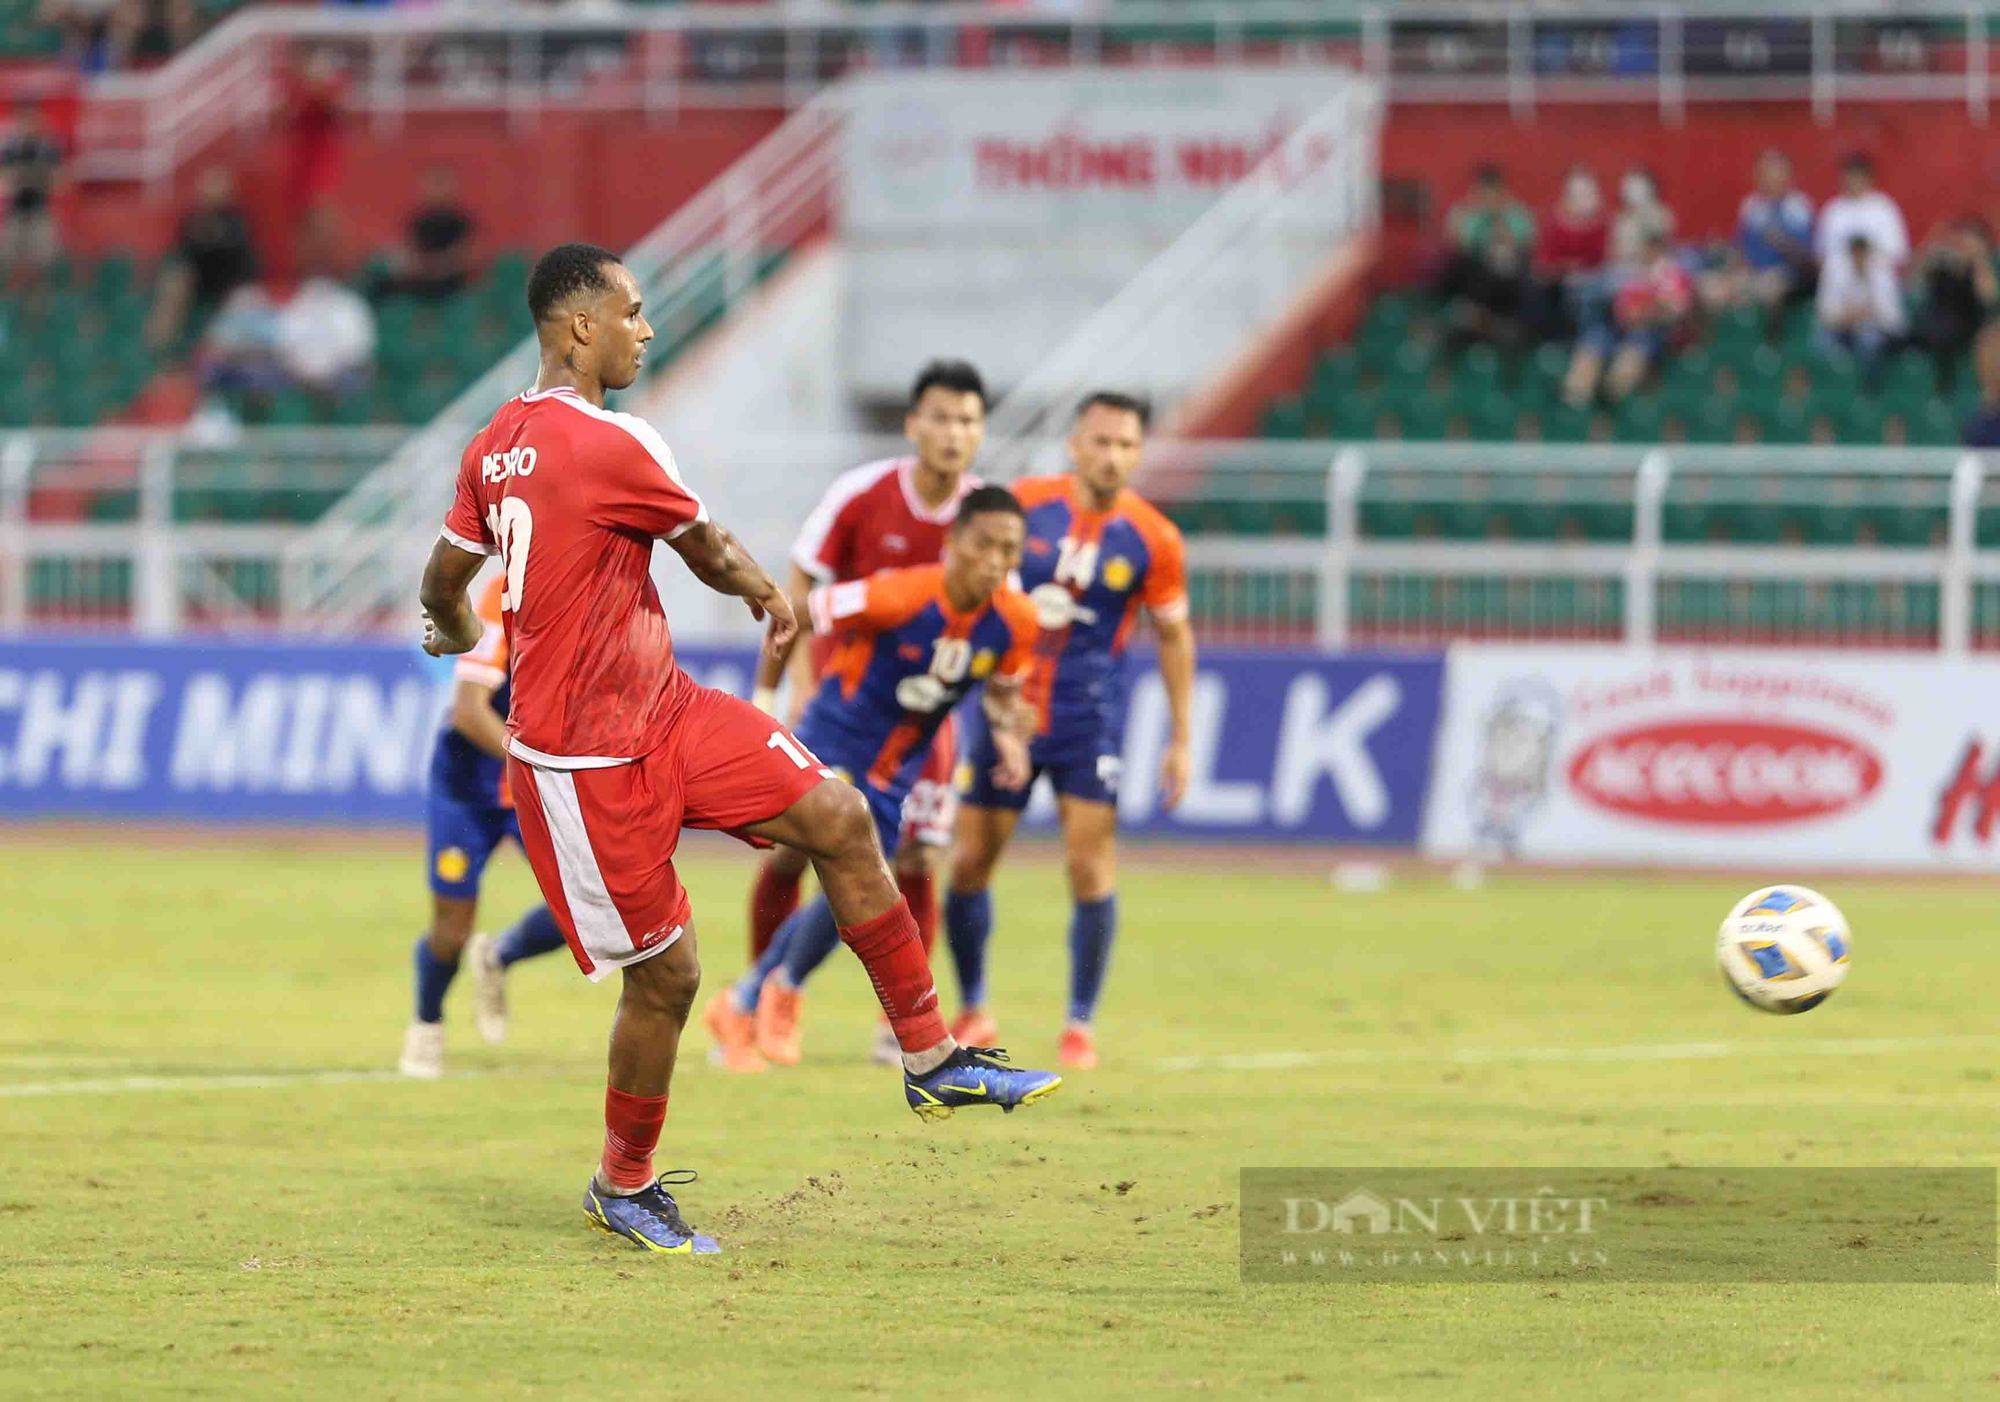 Nhâm Mạnh Dũng kiến tạo, Viettel đánh bại bóng Singapore vượt qua vòng bảng AFC Cup - Ảnh 4.